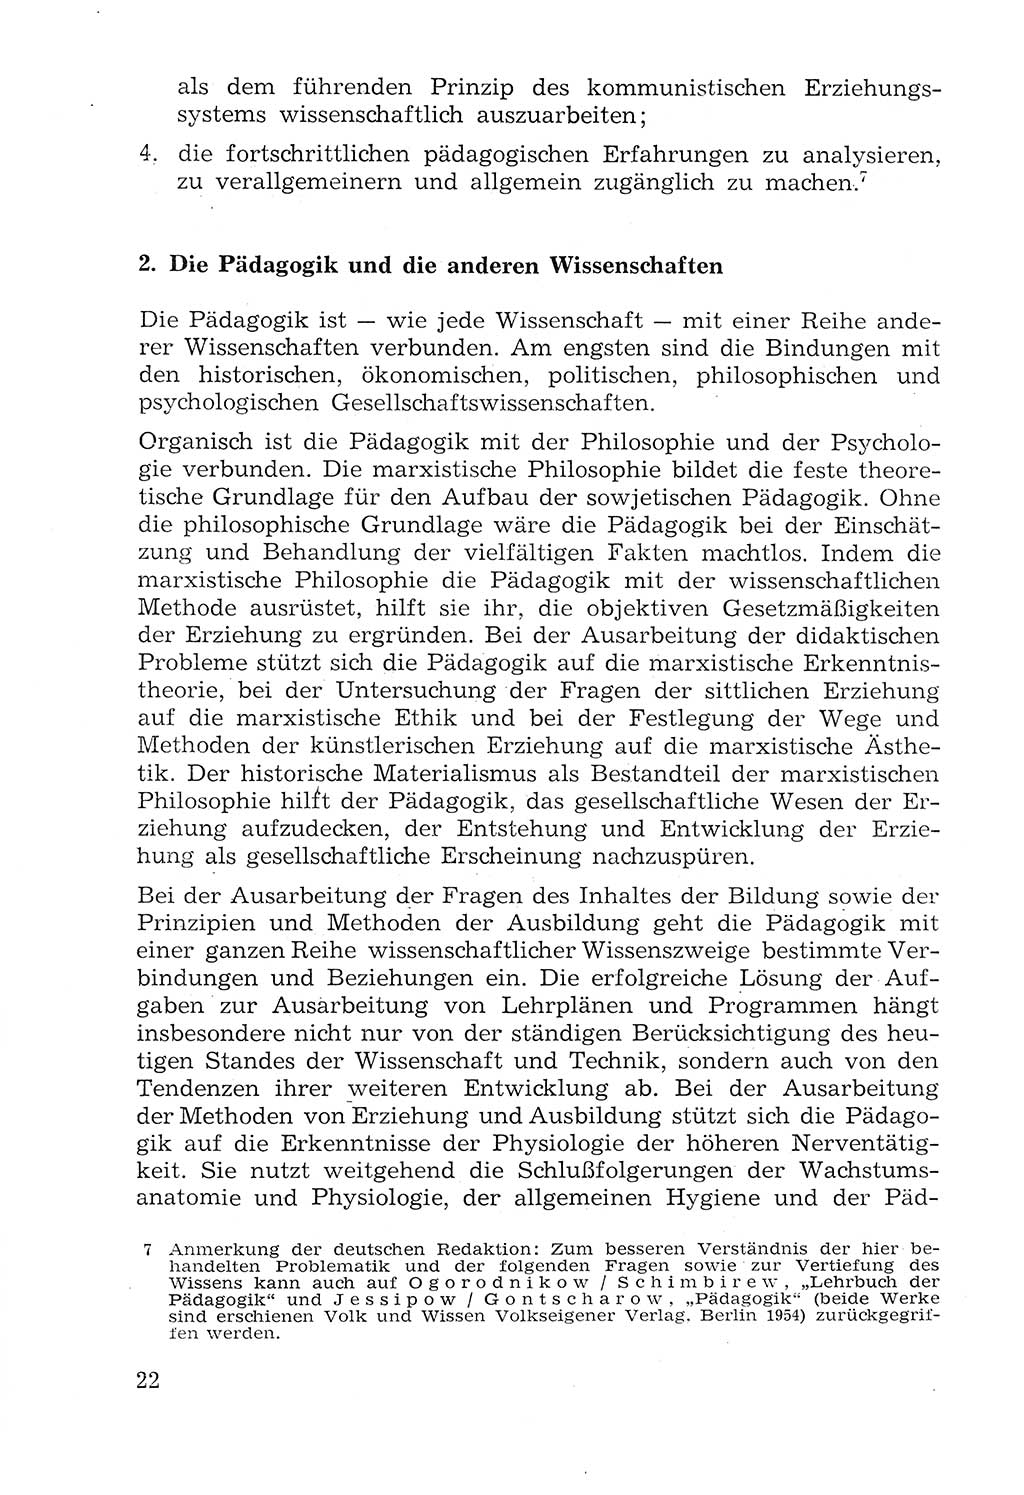 Lehrbuch der Strafvollzugspädagogik [Deutsche Demokratische Republik (DDR)] 1969, Seite 22 (Lb. SV-Pd. DDR 1969, S. 22)